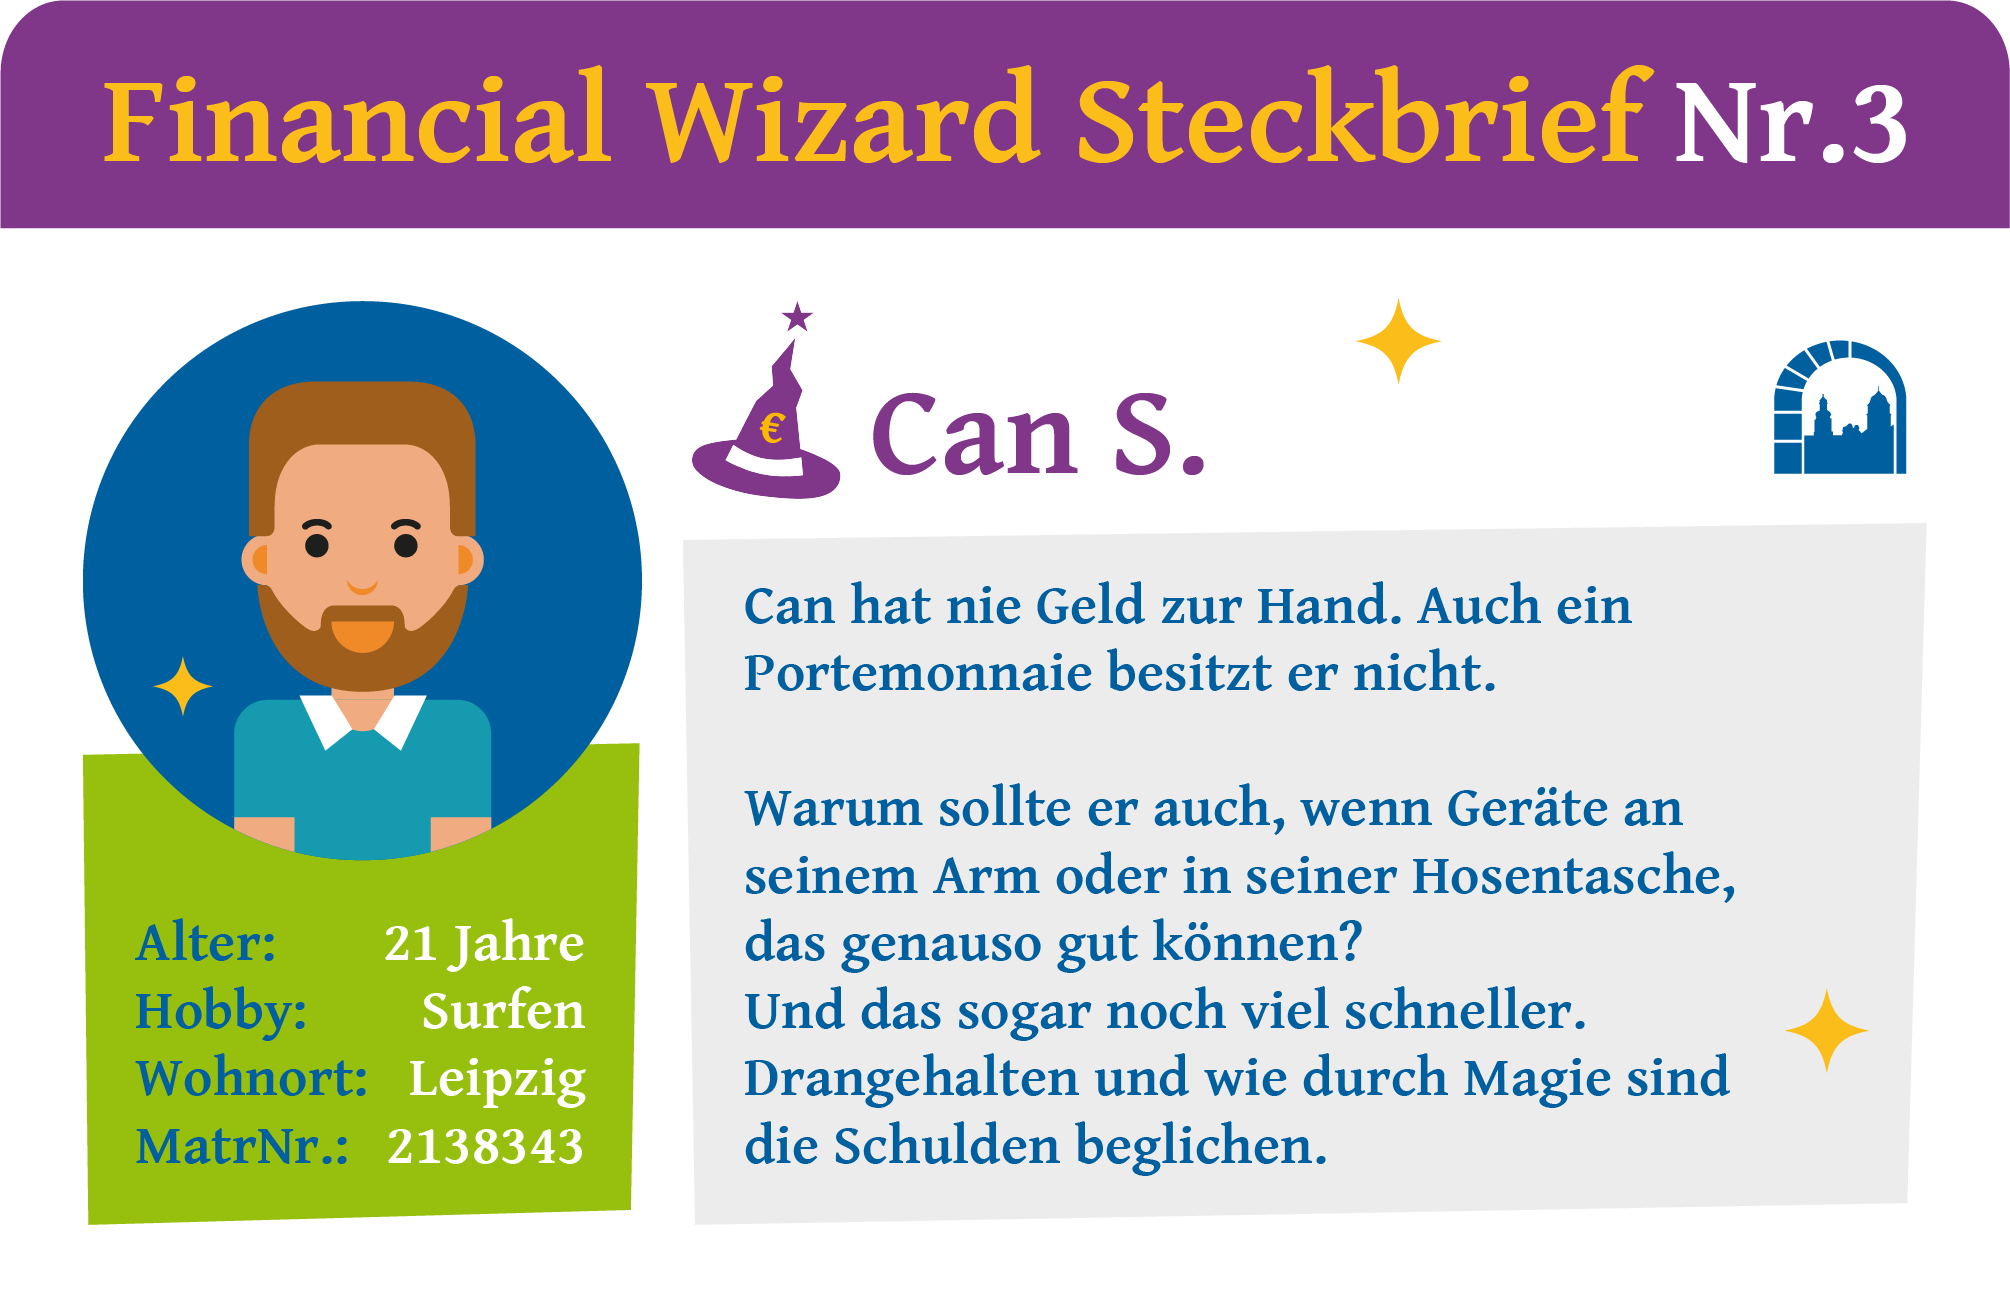 Steckbrief Nr. 3 zur Financial Wizard Challenge 4